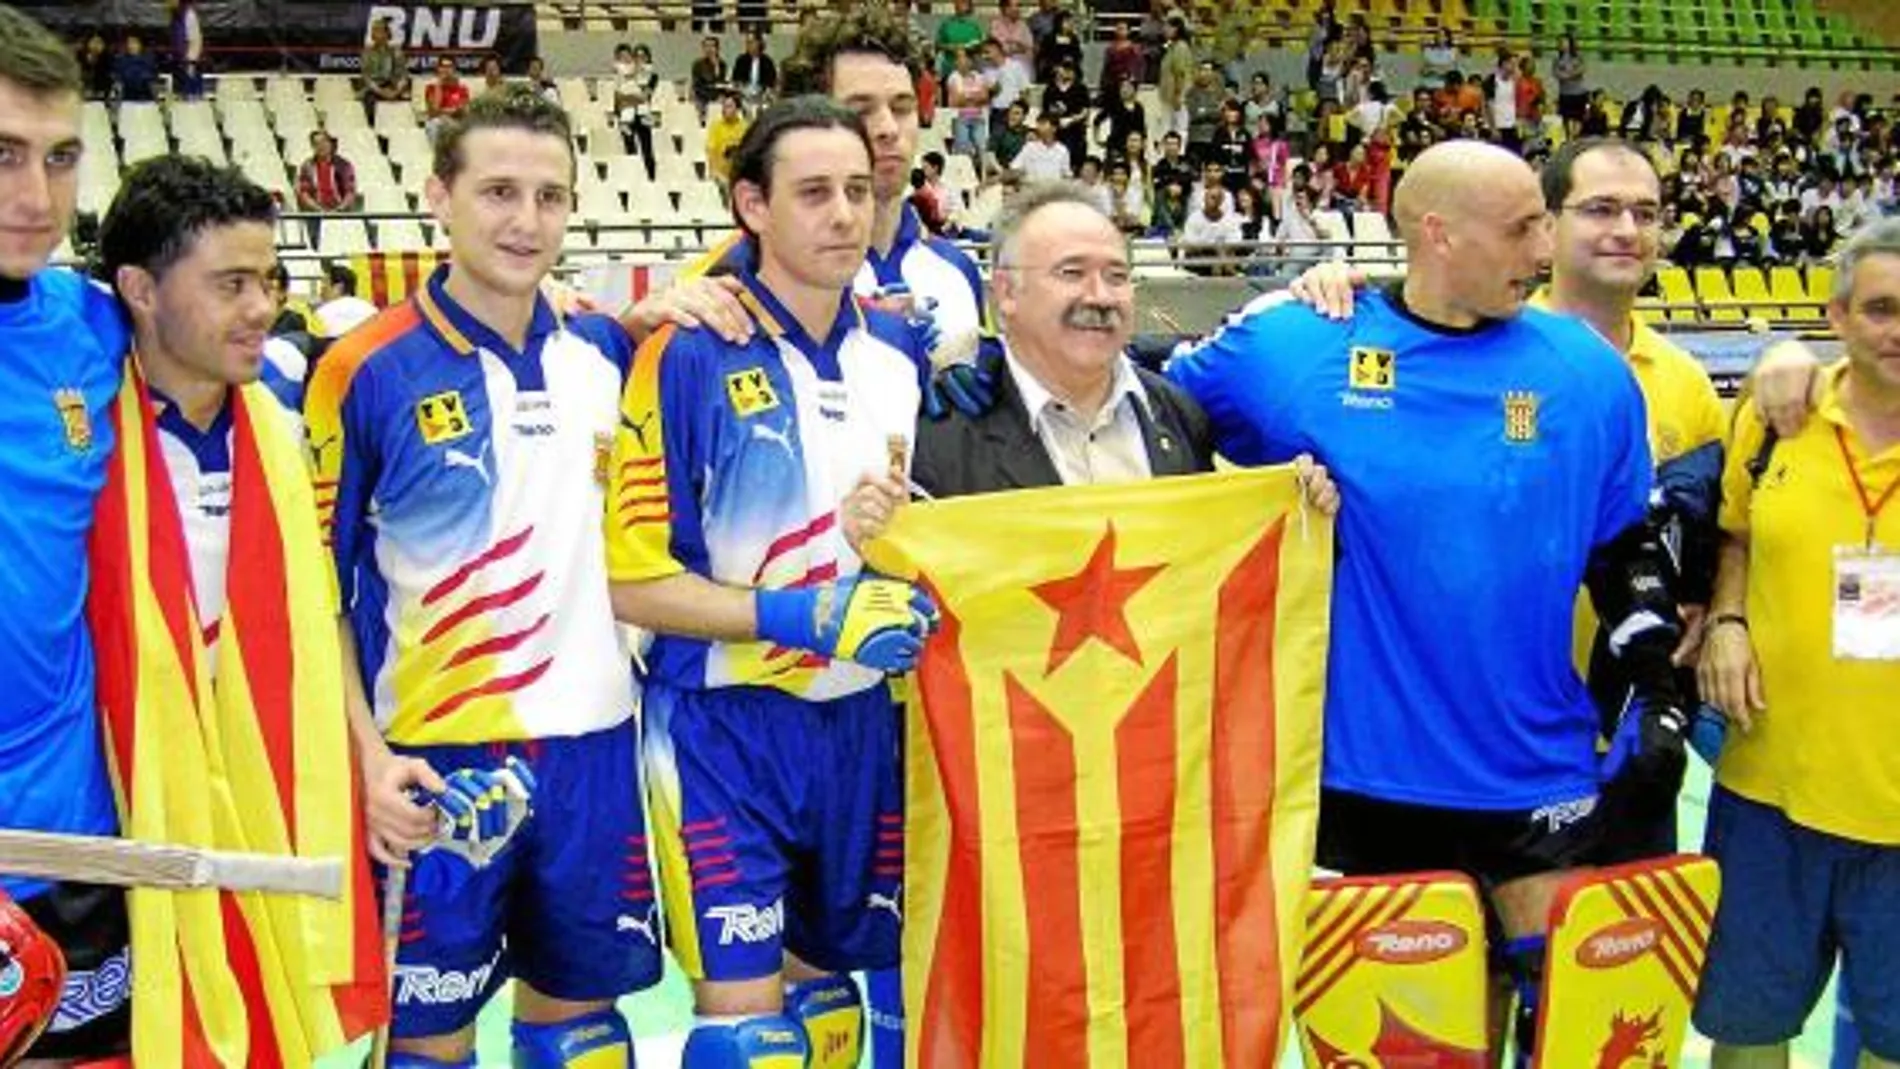 Carod acompañó a la selección catalana de hockey en el campeonato mundial B que se disputó en Macao en el año 2004